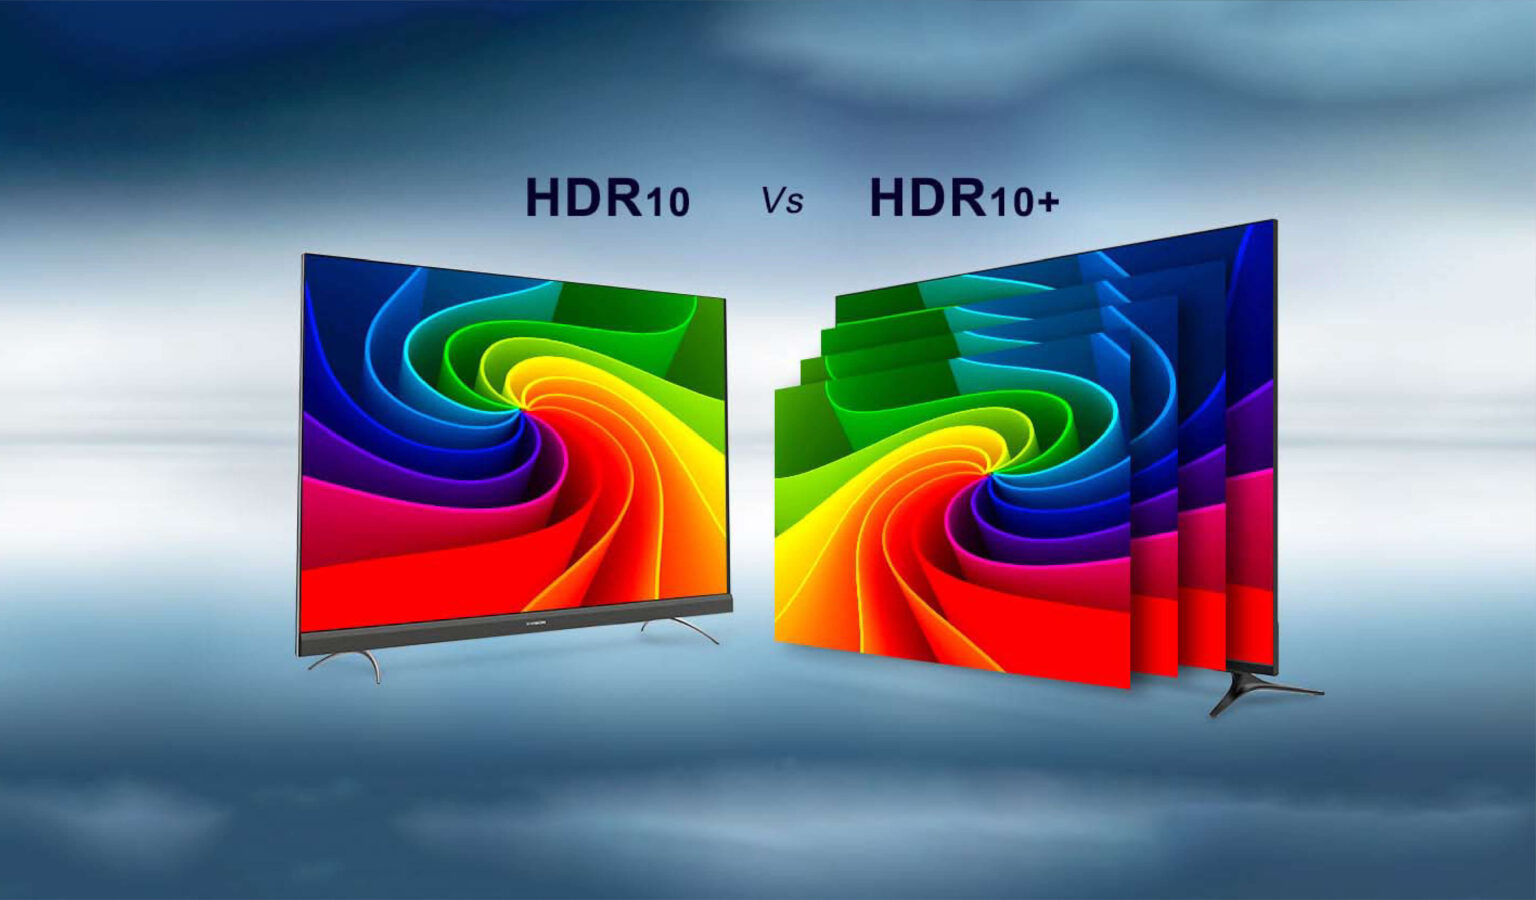 تکنولوژی HDR10 و +HDR10